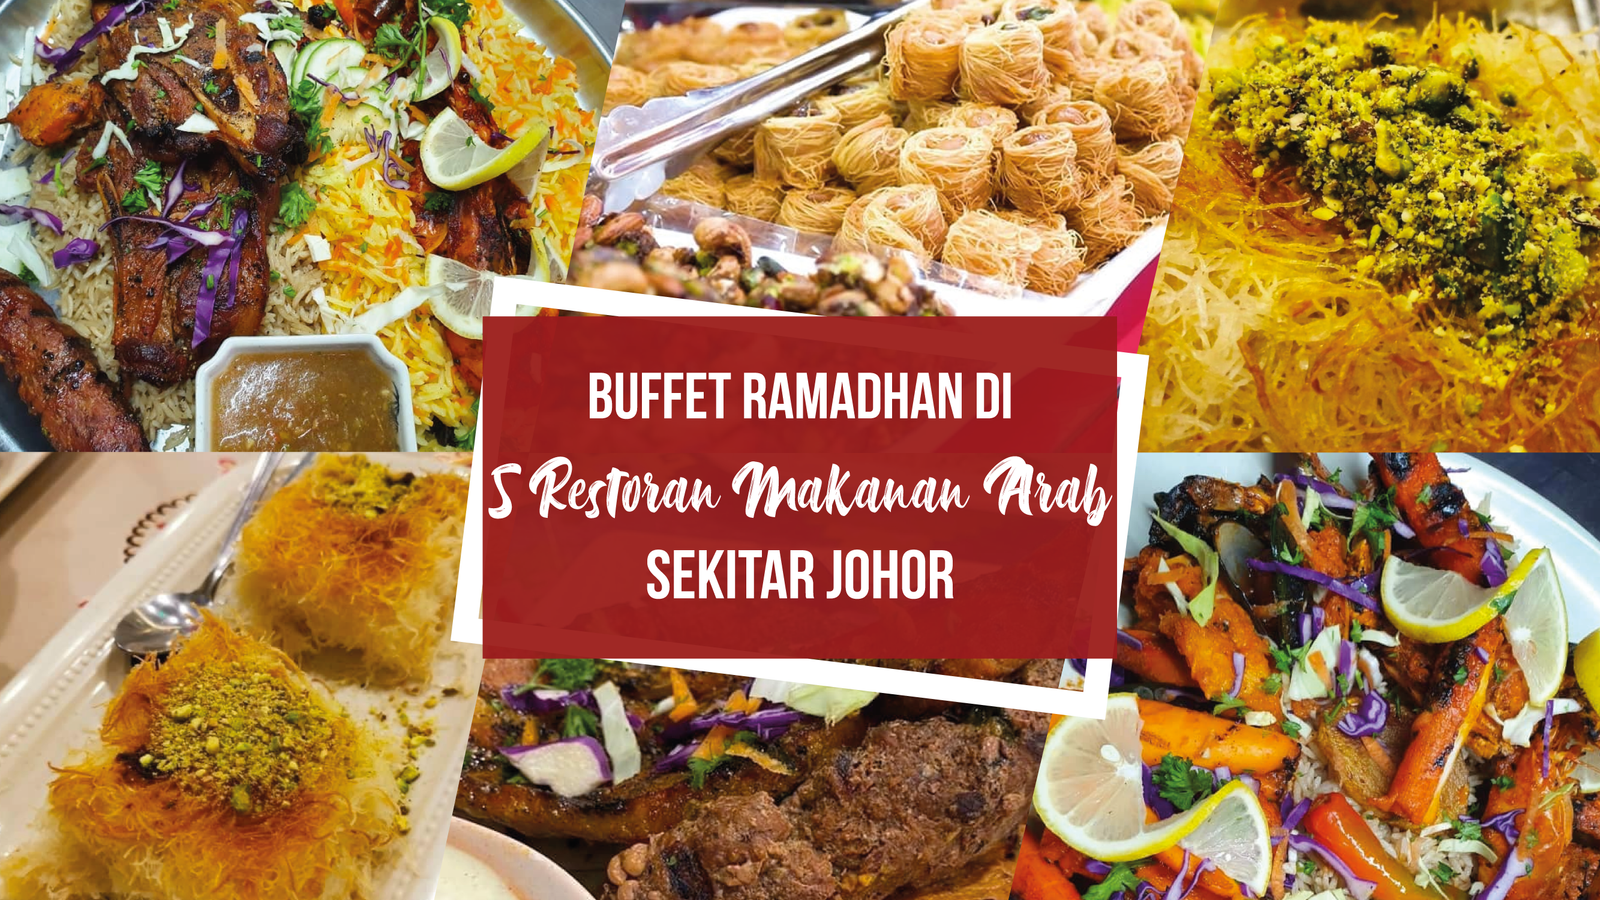 Buffet Ramadhan di 5 Restoran Makanan Arab Sekitar Johor